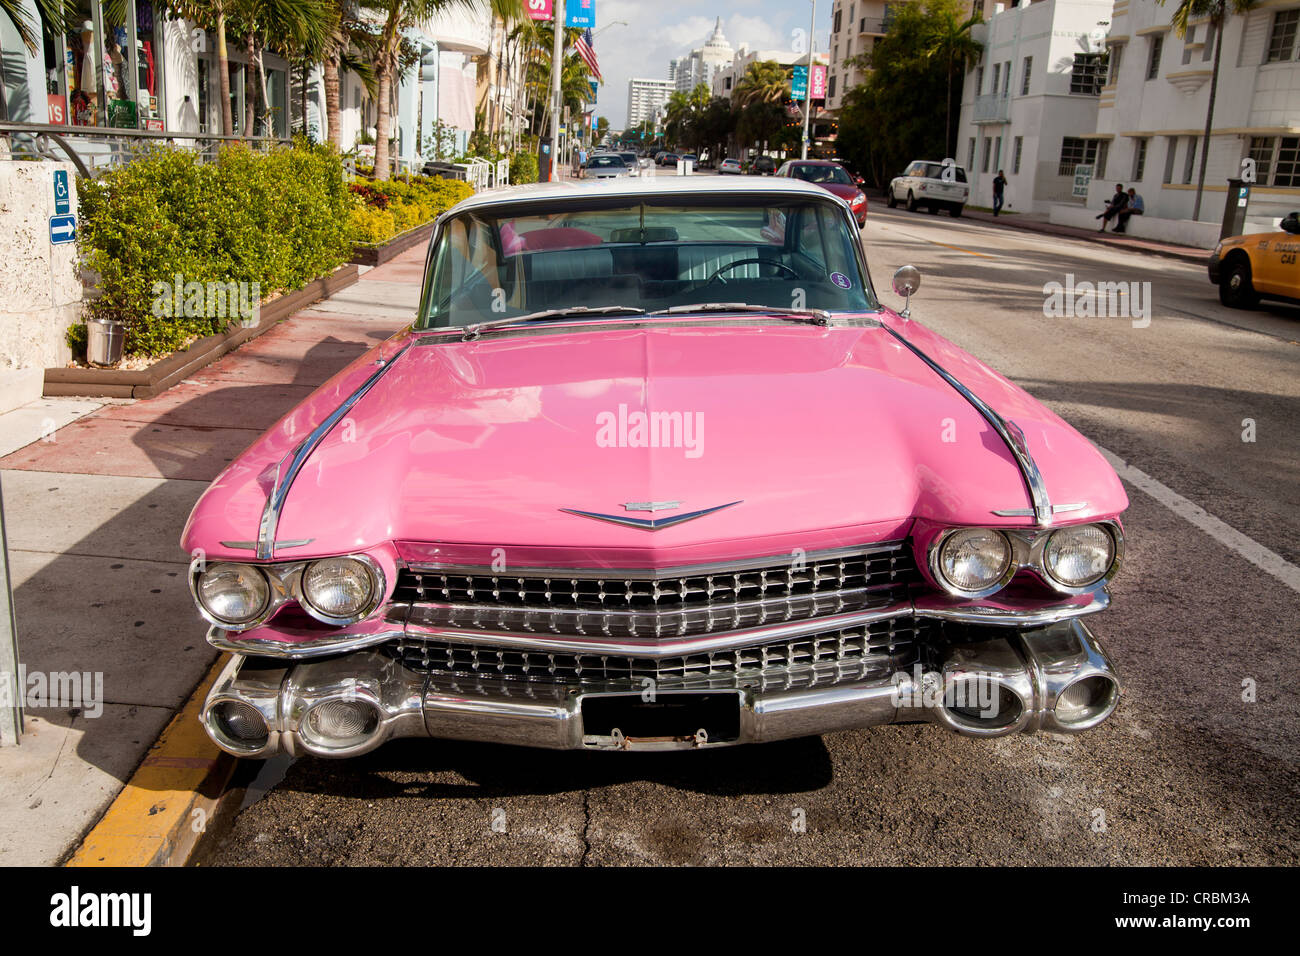 Carro De Miami En Miami Playa Sur Imagen de archivo editorial - Imagen de  florida, districto: 186233069